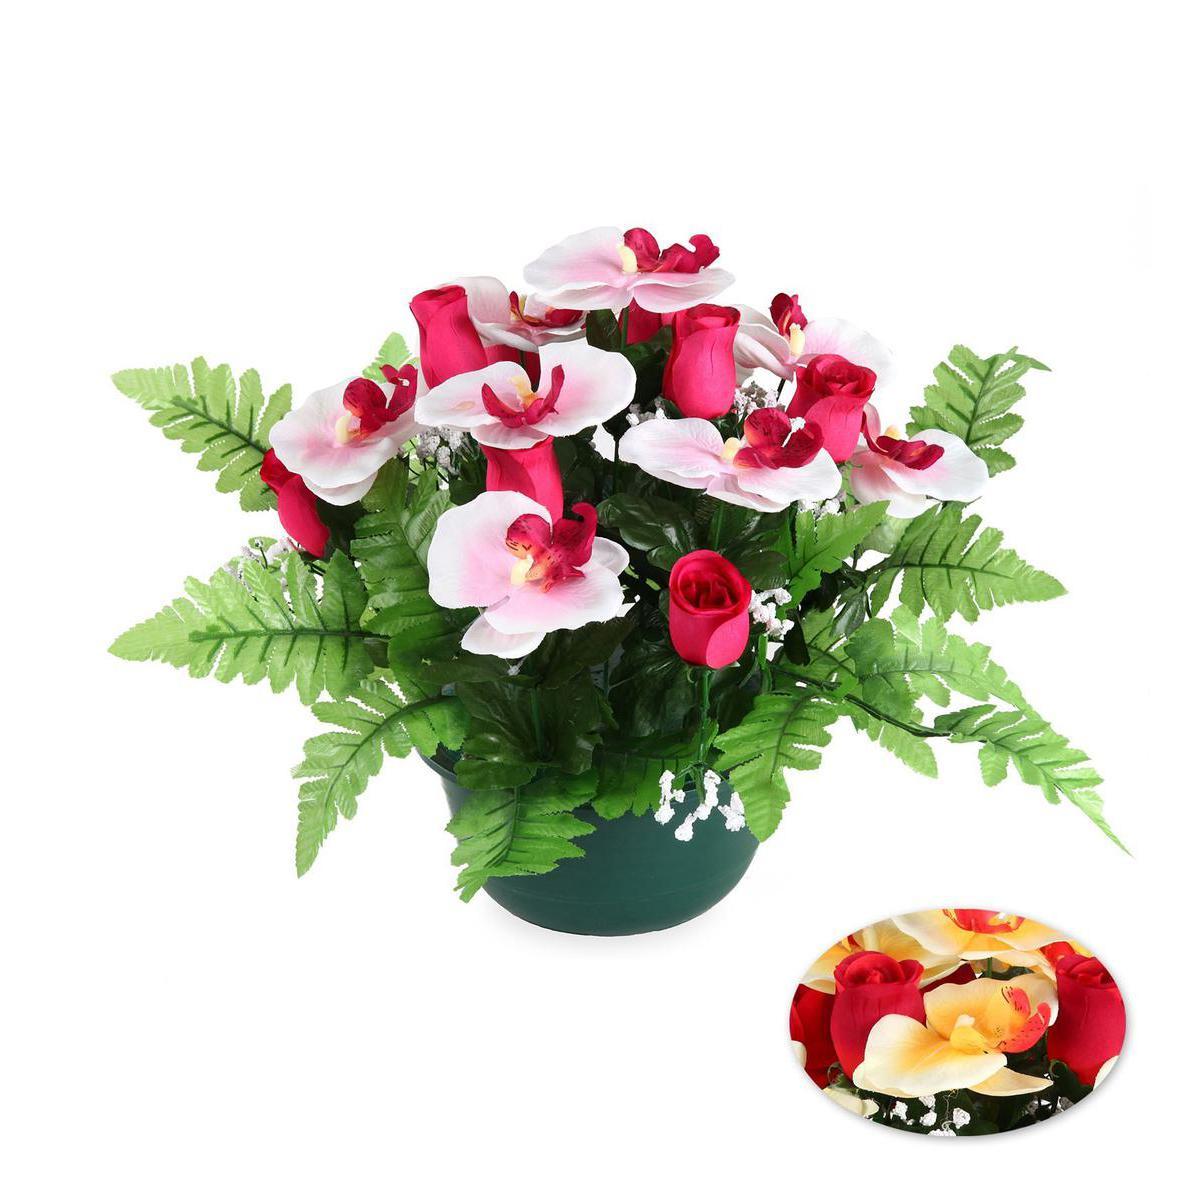 Composition boutons de roses orchidées - Plastique, Polyester - Diam 19 x 31 cm - Rose Rouge Orange